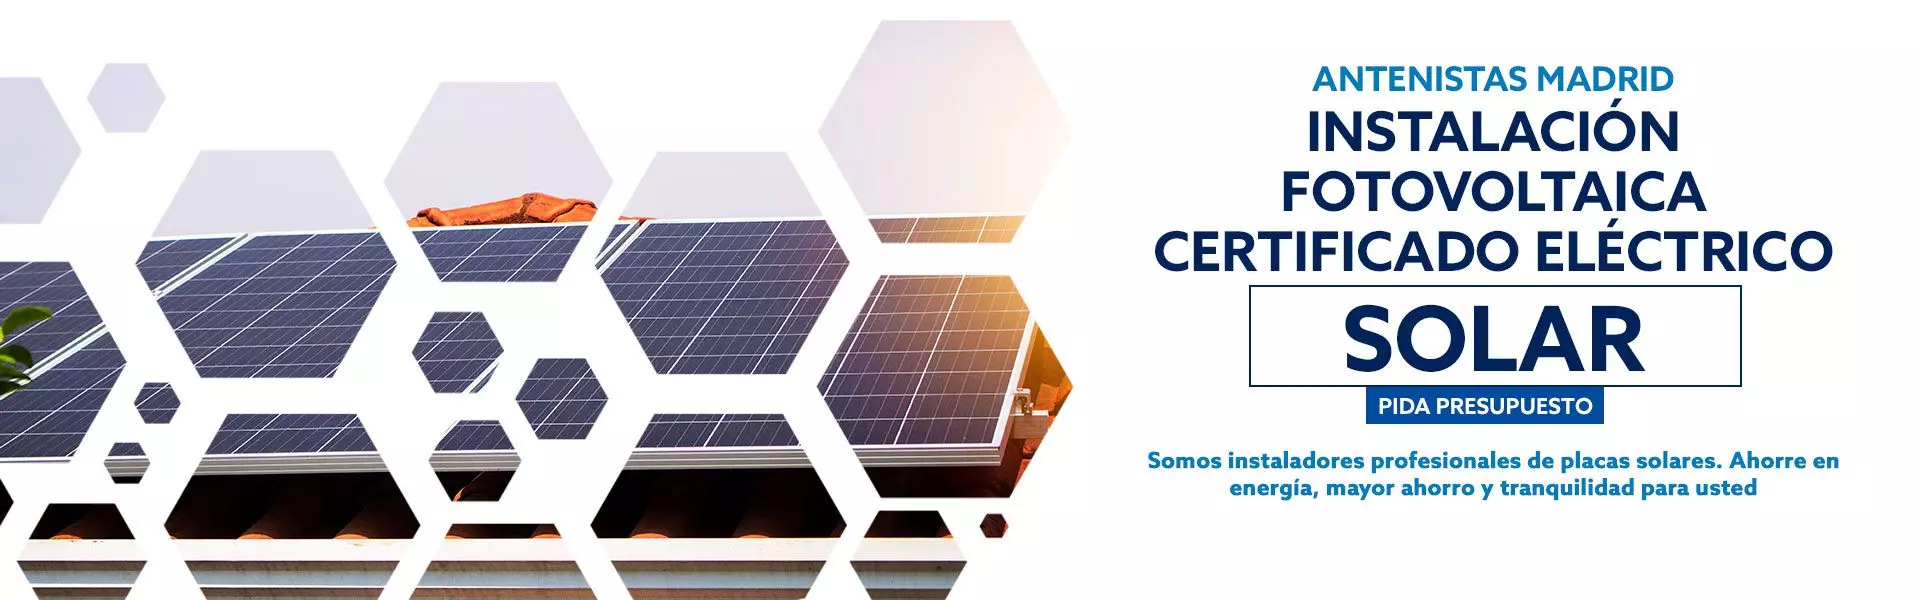 Certificado Eléctrico Solar - Instalación Fotovoltaica Madrid y Toledo.